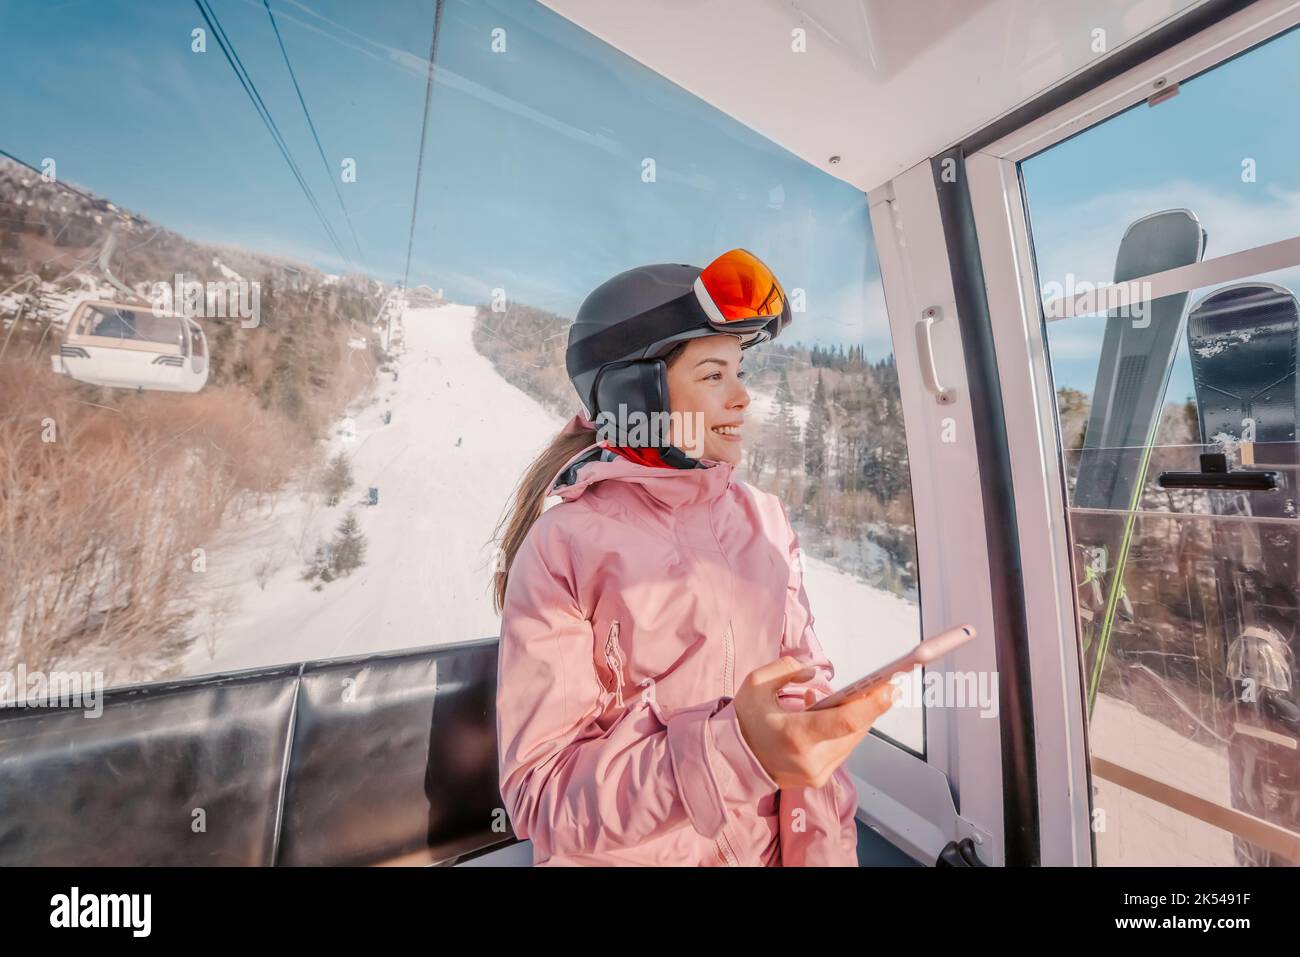 Skiurlaub - Frau Skifahrerin mit Telefon-App in Gondelbahn. Lächelndes Mädchen mit dem mobilen Smartphone, das Skibekleidung, Helm und Brille trägt. Ski Stockfoto